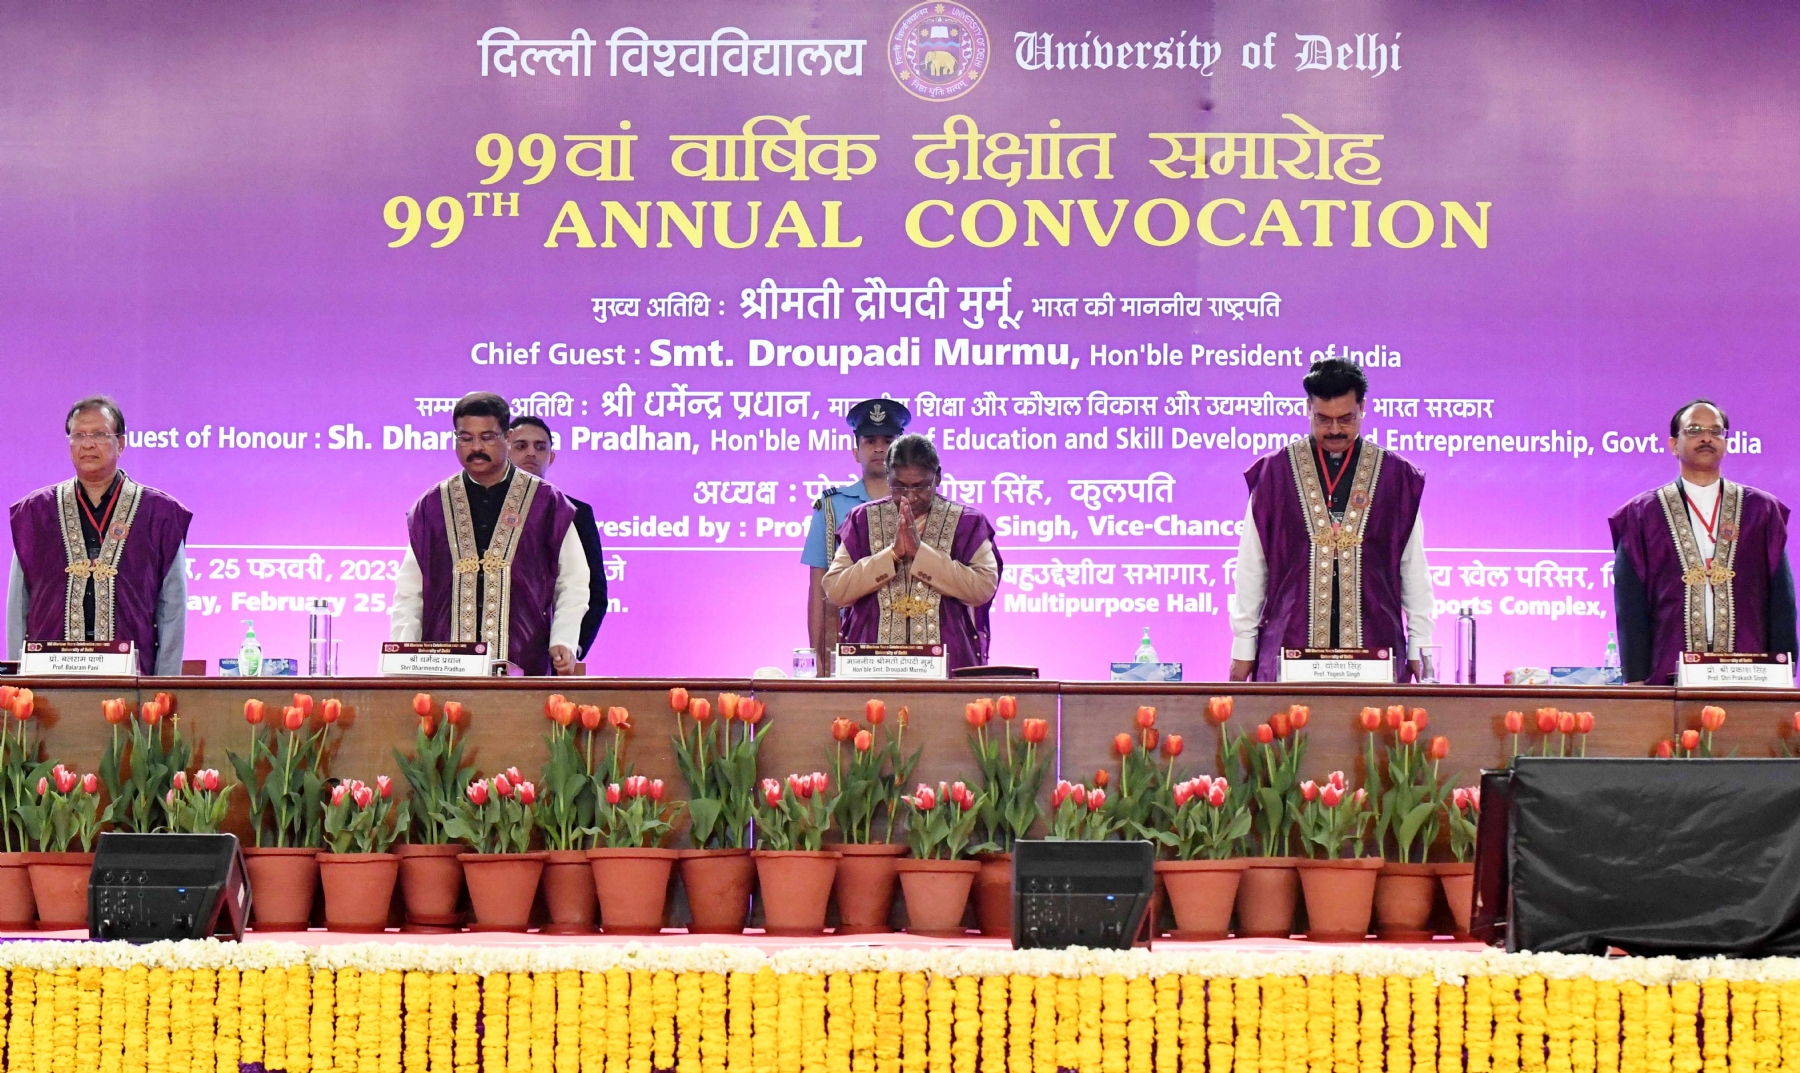 राष्ट्रपति द्रौपदी मुर्मु ने दिल्ली विश्वविद्यालय के शताब्दी वर्ष दीक्षांत समारोह को सम्बोधित किया और पुरस्कार दिये। हिन्दुस्थान समाचार/ फोटो गणेश बिष्ट 